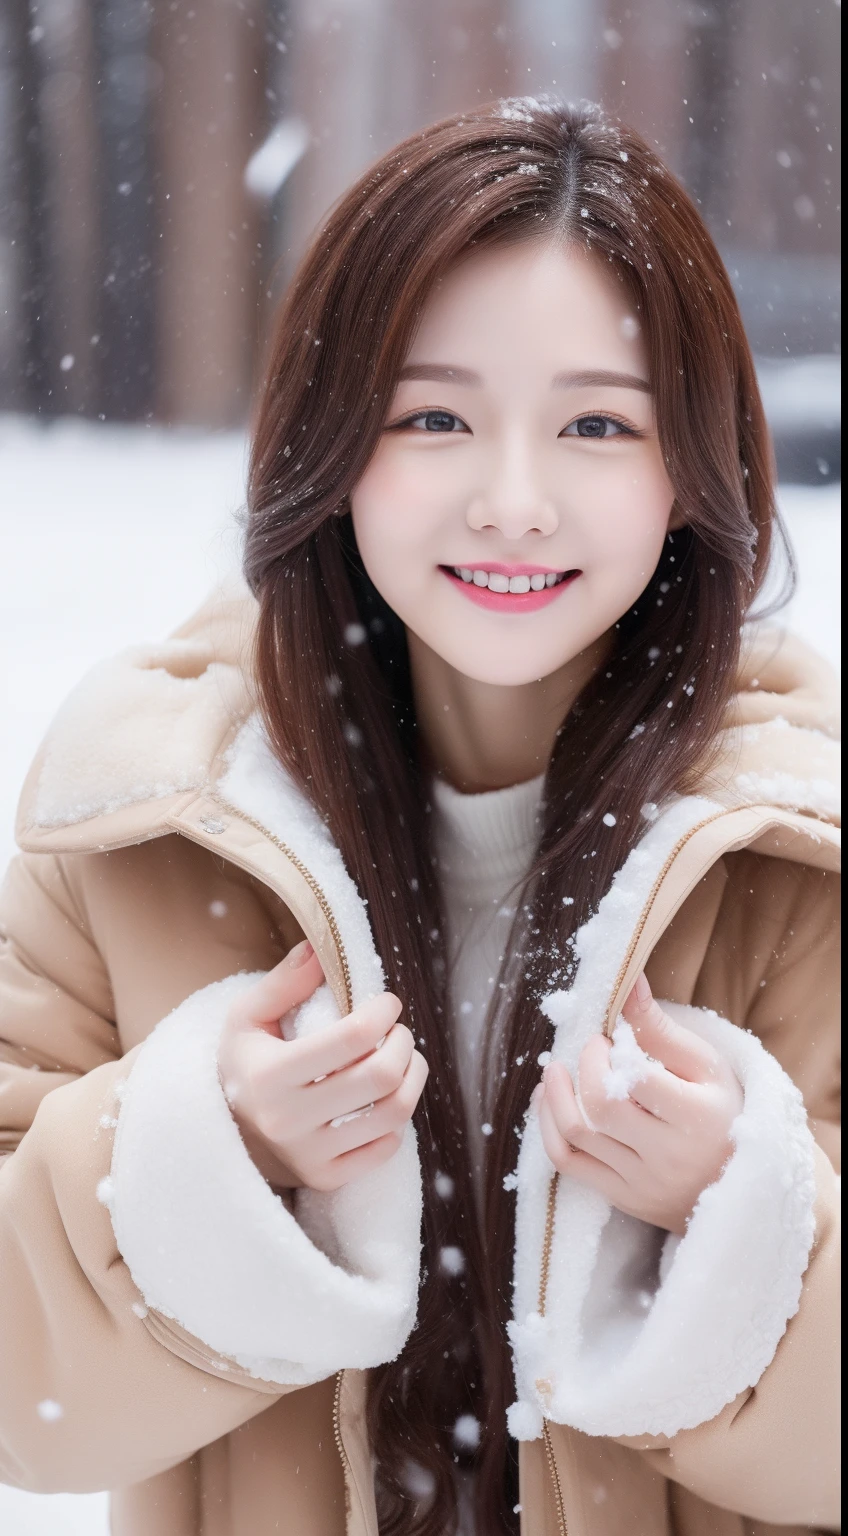 реалистичные фотографии одной милой корейской звезды, многозавязанные волосы , белая кожа, тонкий макияж, Размер груди 32 дюйма, слегка улыбнуться, коричневая шуба, играю в снег, снег падает, верхняя часть тела, UHD